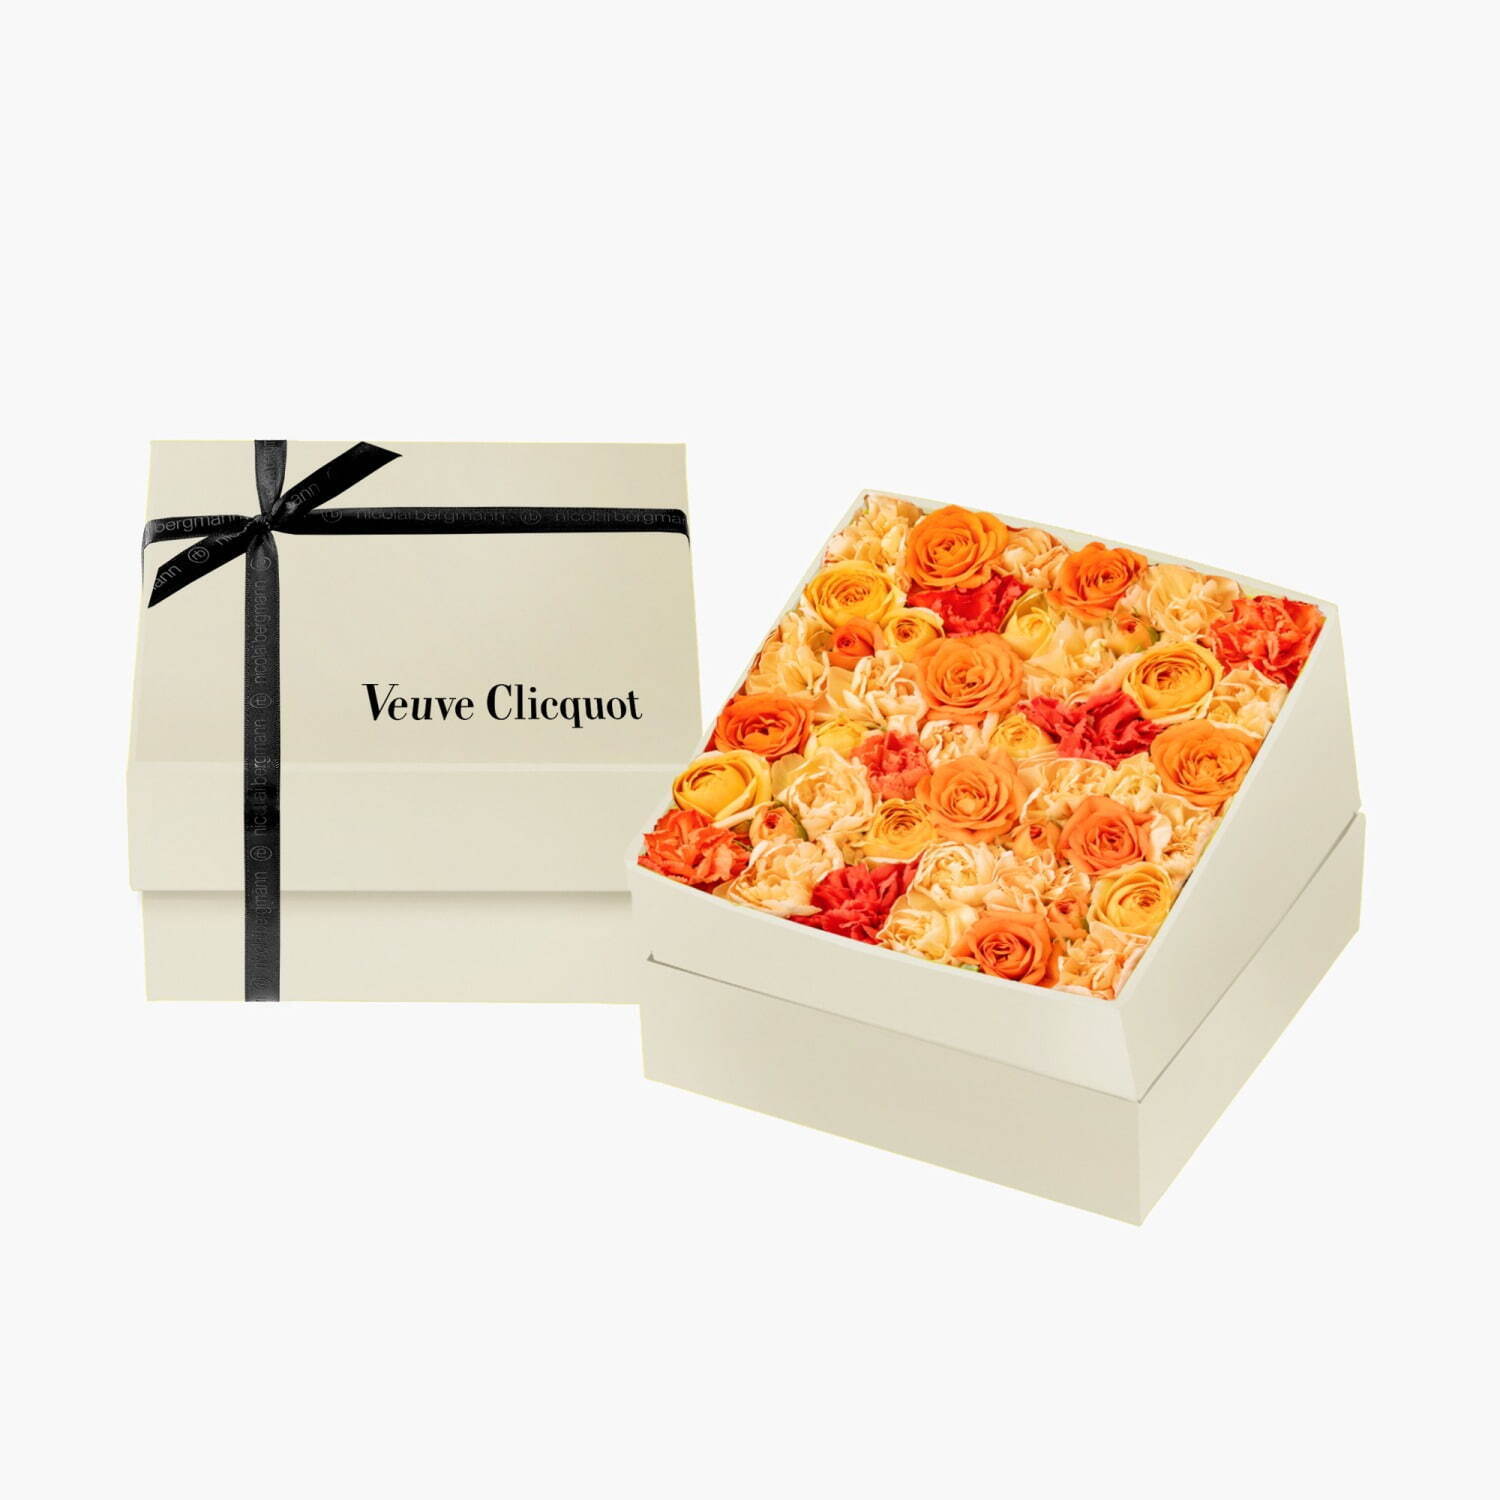 ヴーヴ・クリコ ×ニコライ バーグマン フラワーズ & デザインオリジナル フレッシュフラワーボックス 8,690円